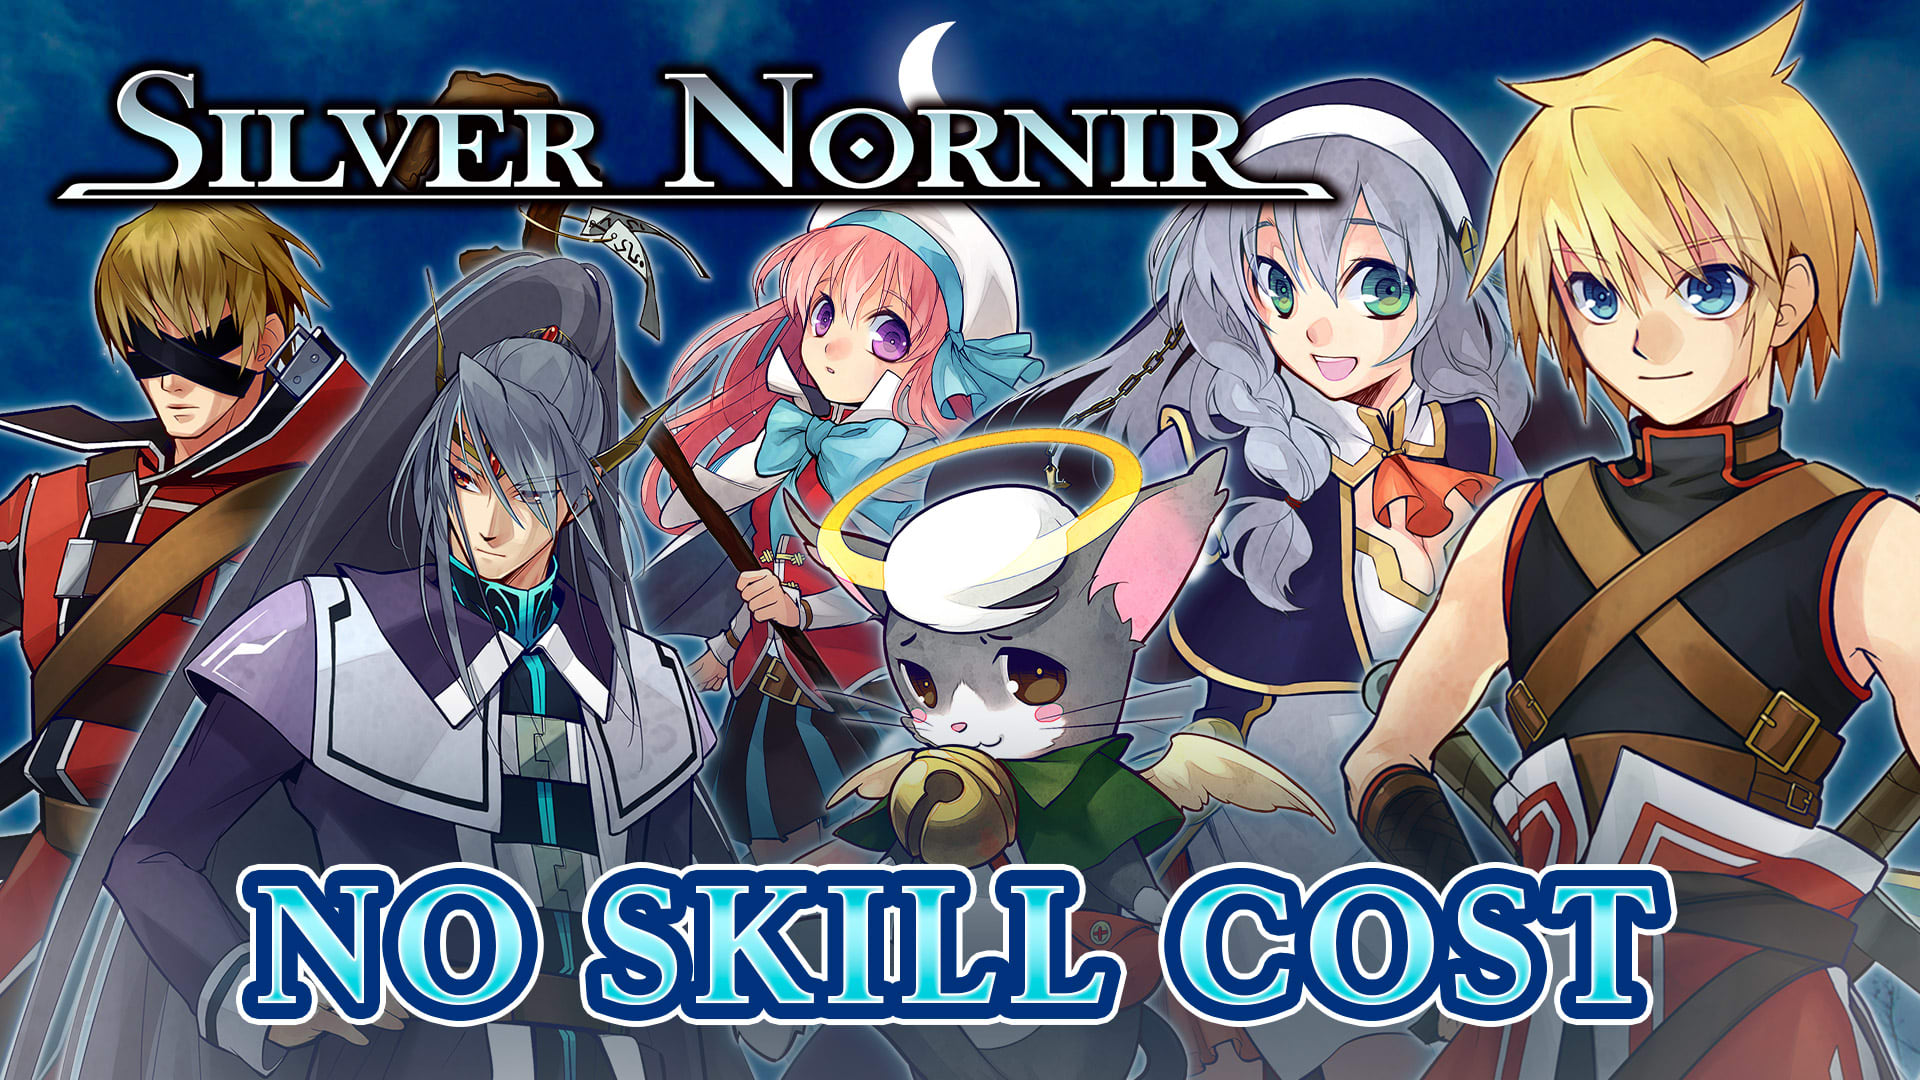 No Skill Cost - Silver Nornir